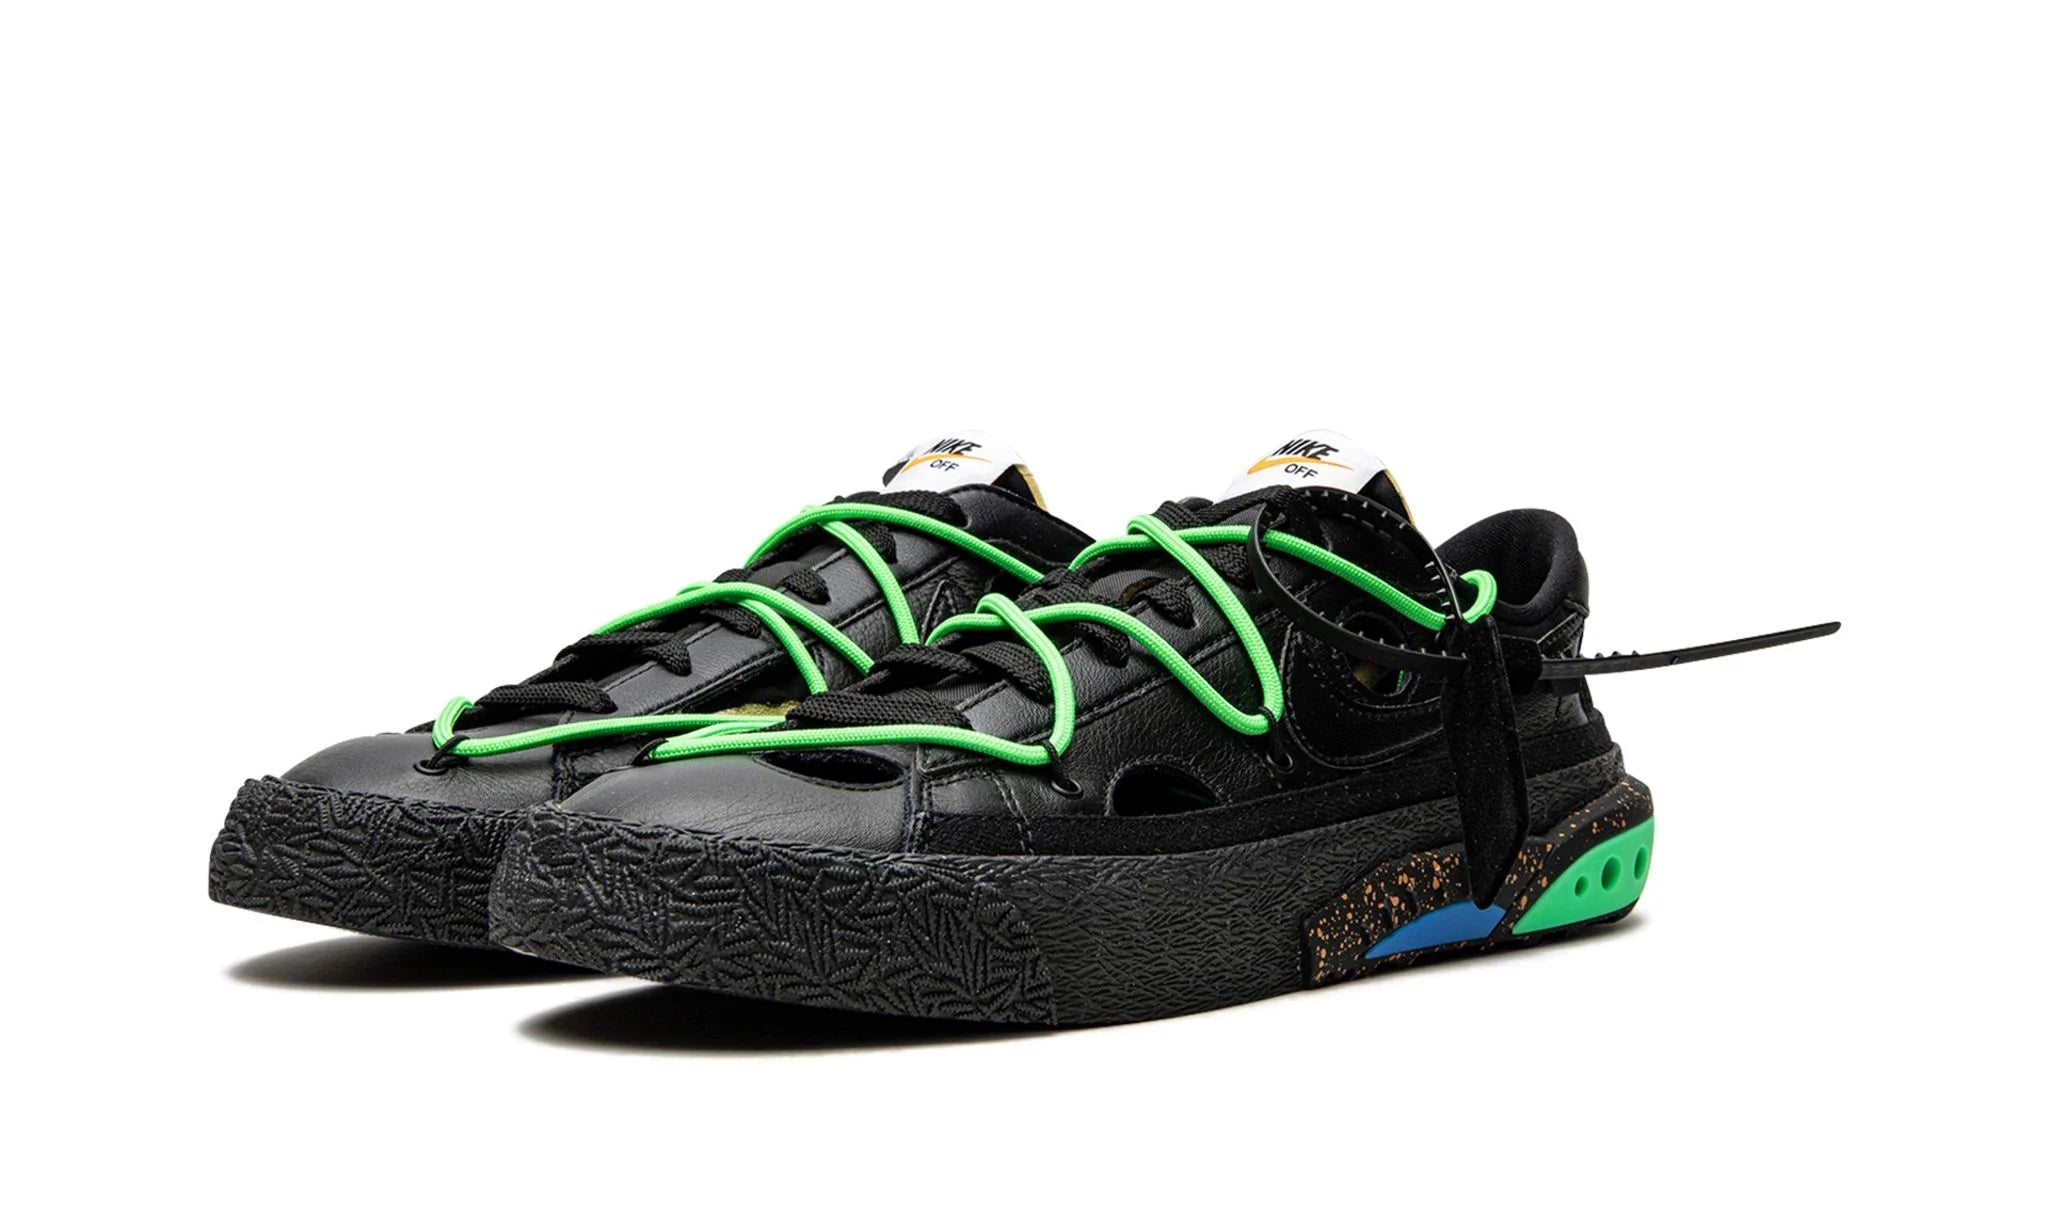 Nike Blazer Low Off-White Black Electro Green - Dunk Low - Pirri - Dunk Low Czarny